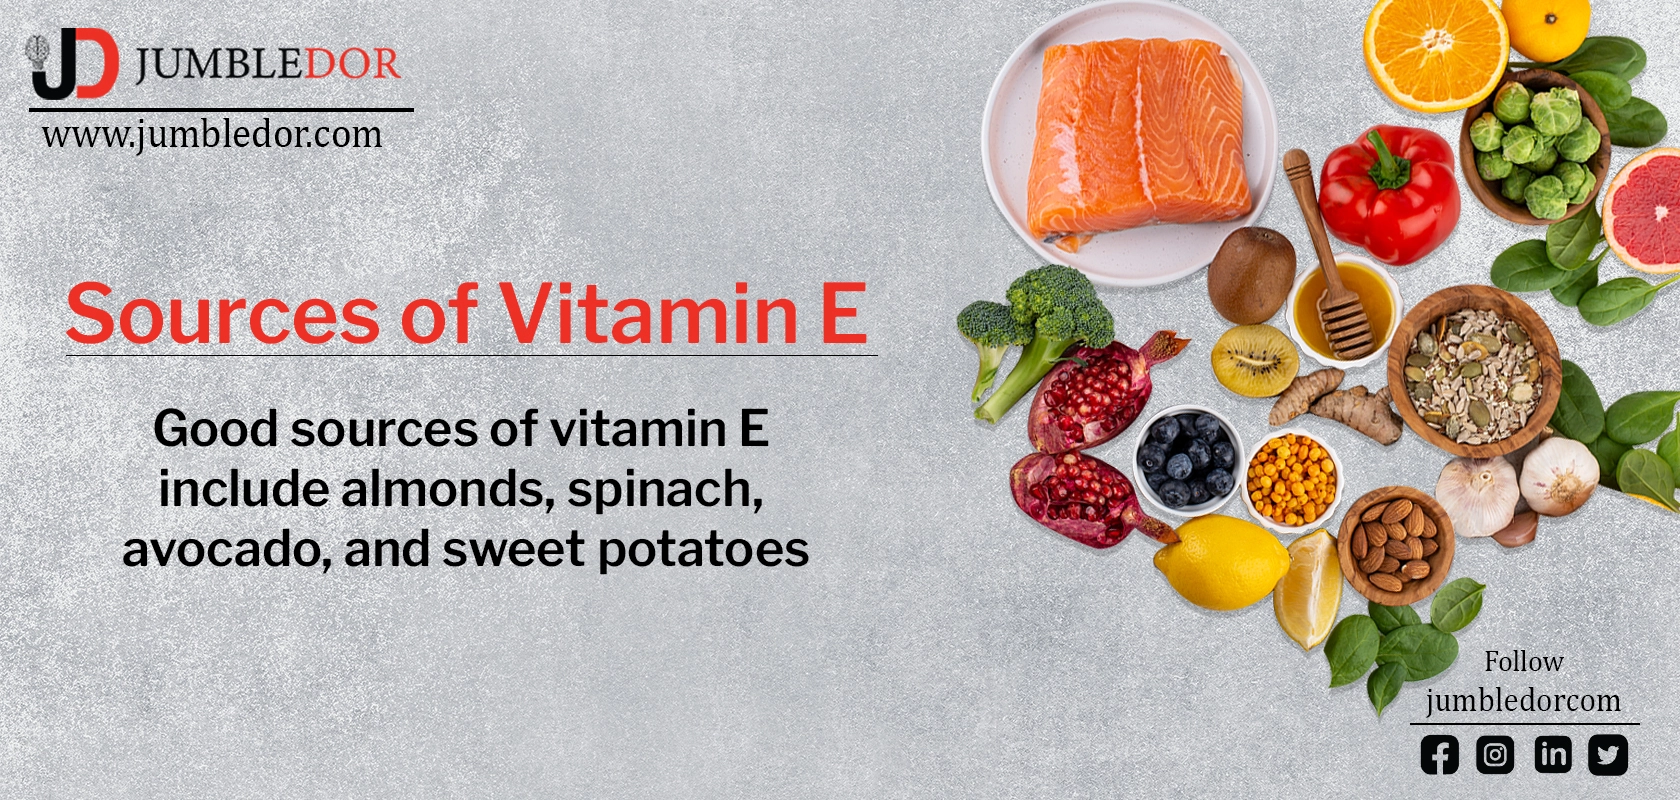 Sources of vitamin e